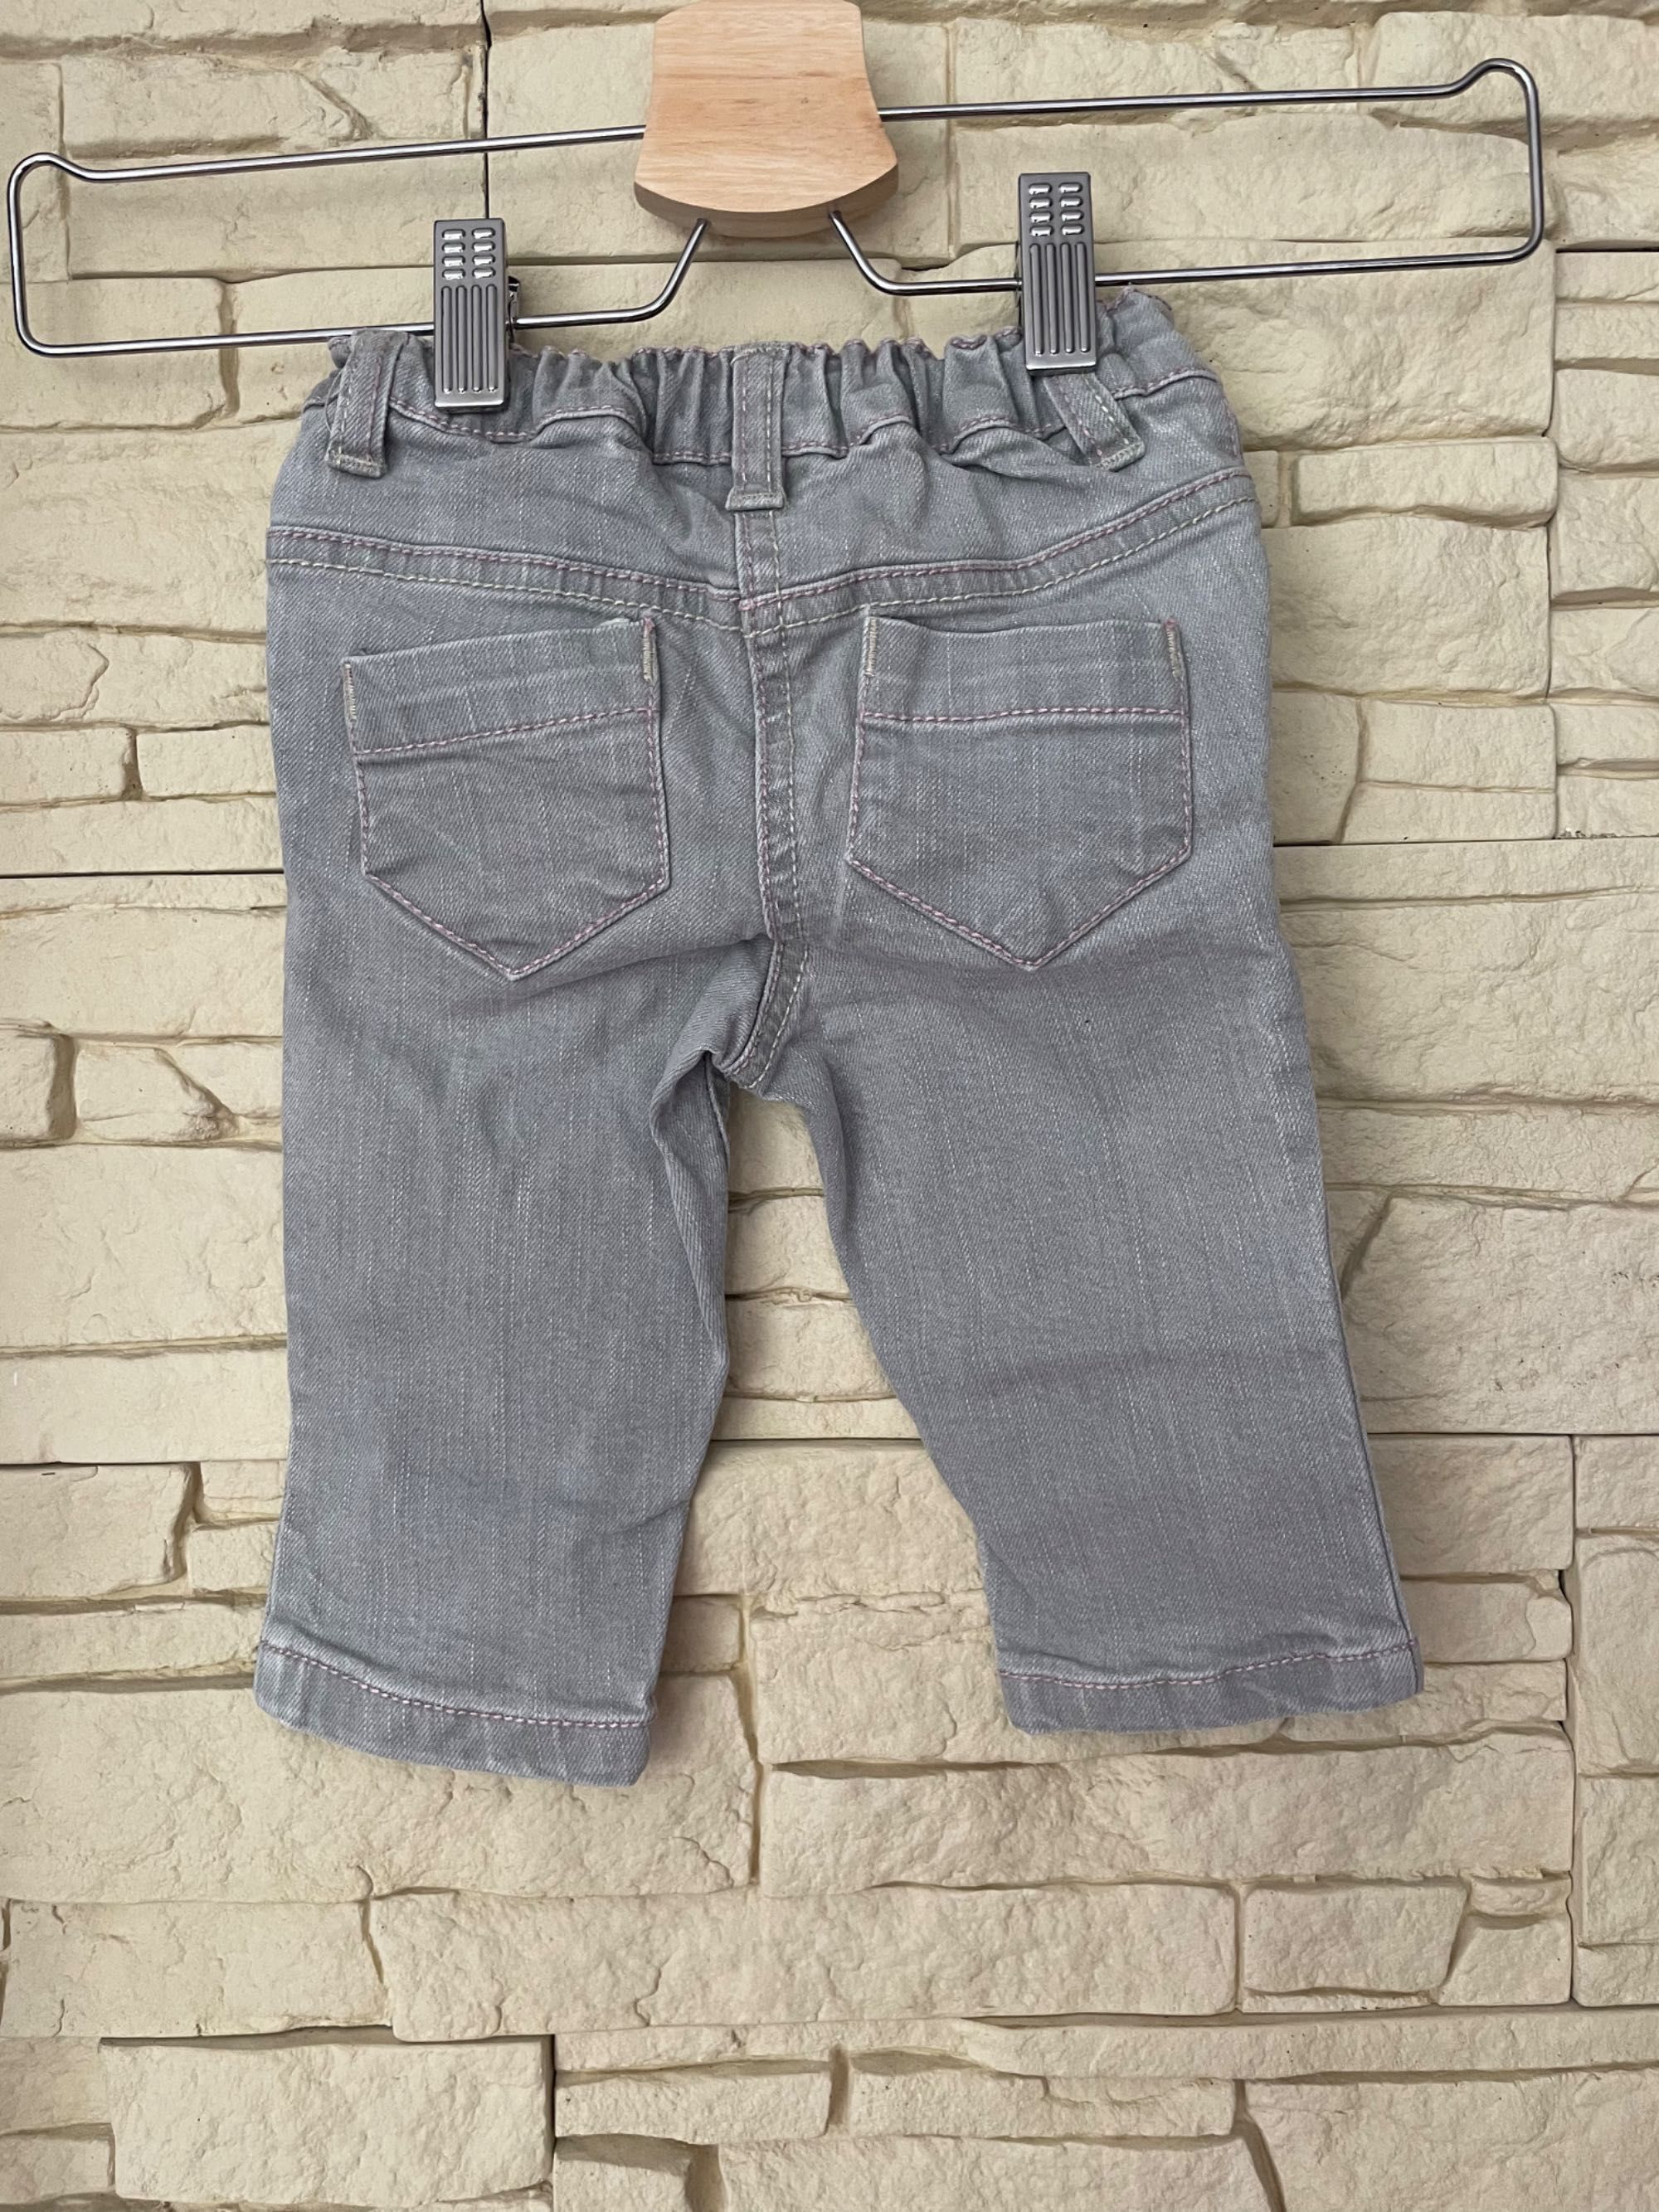 NEXT spodnie niemowlęce, spodenki, jeansy szare r.68